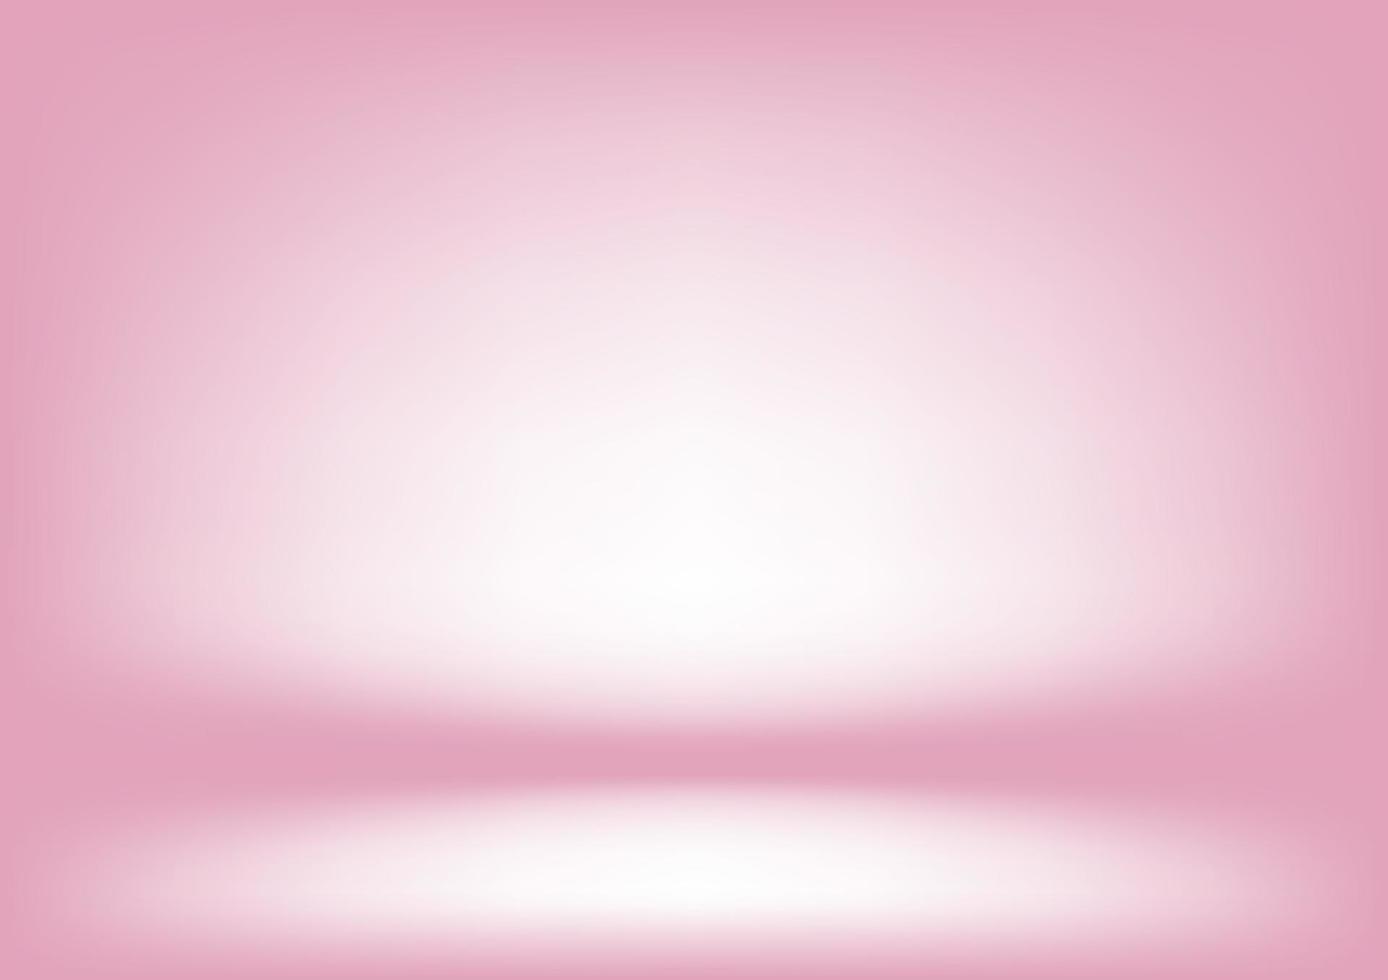 rosa sfondo per uso per video e generale opera. vettore